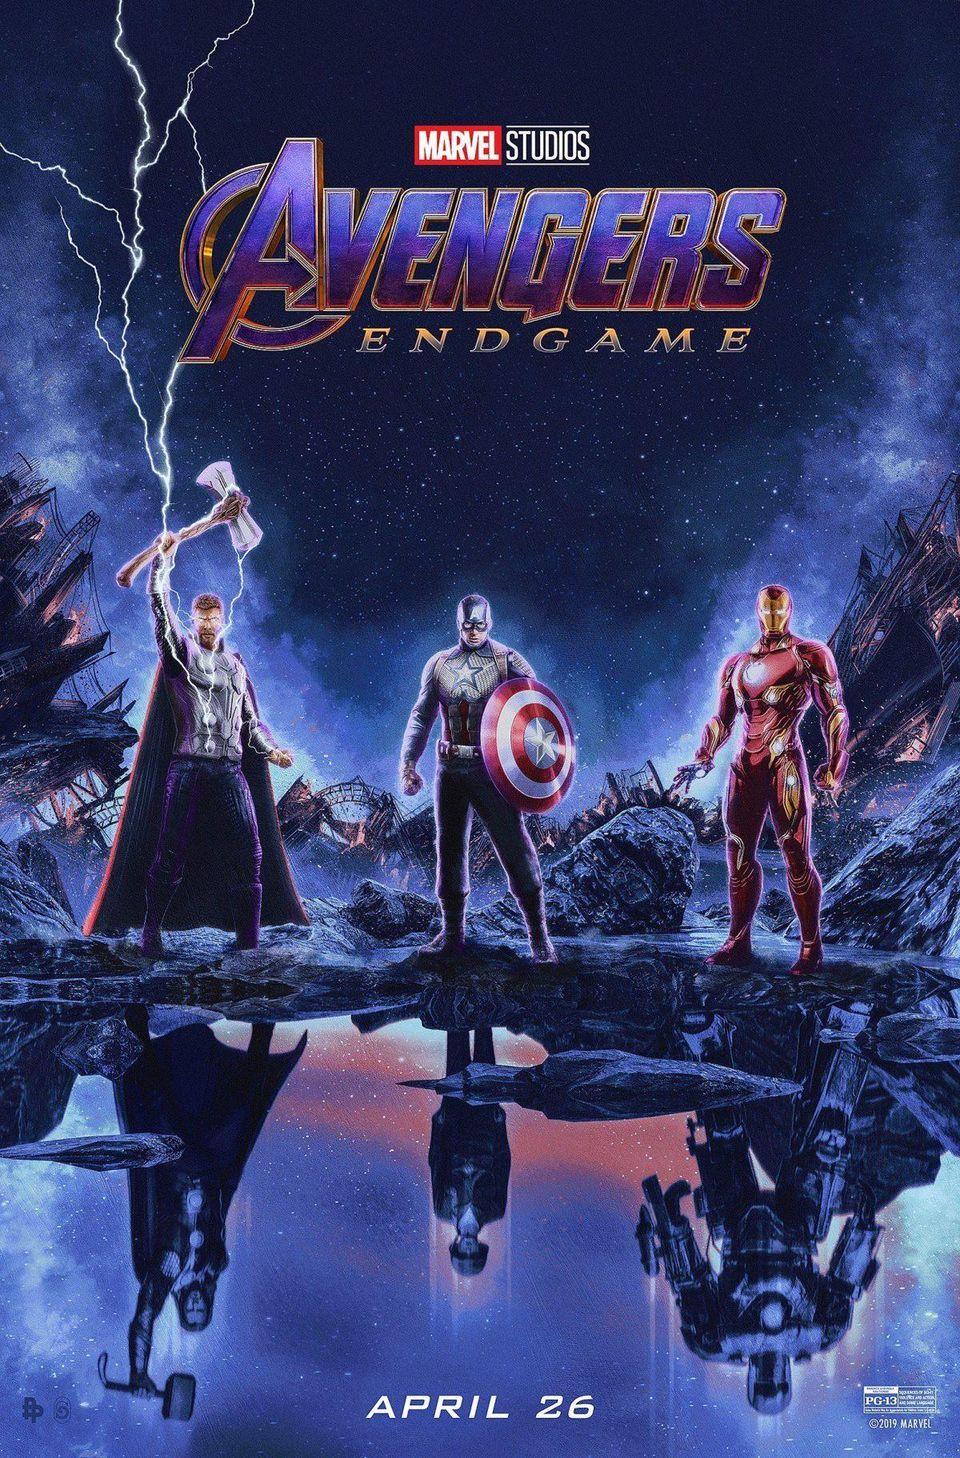 Avengers: Endgame' Is Already The Highest Grossing Film Of